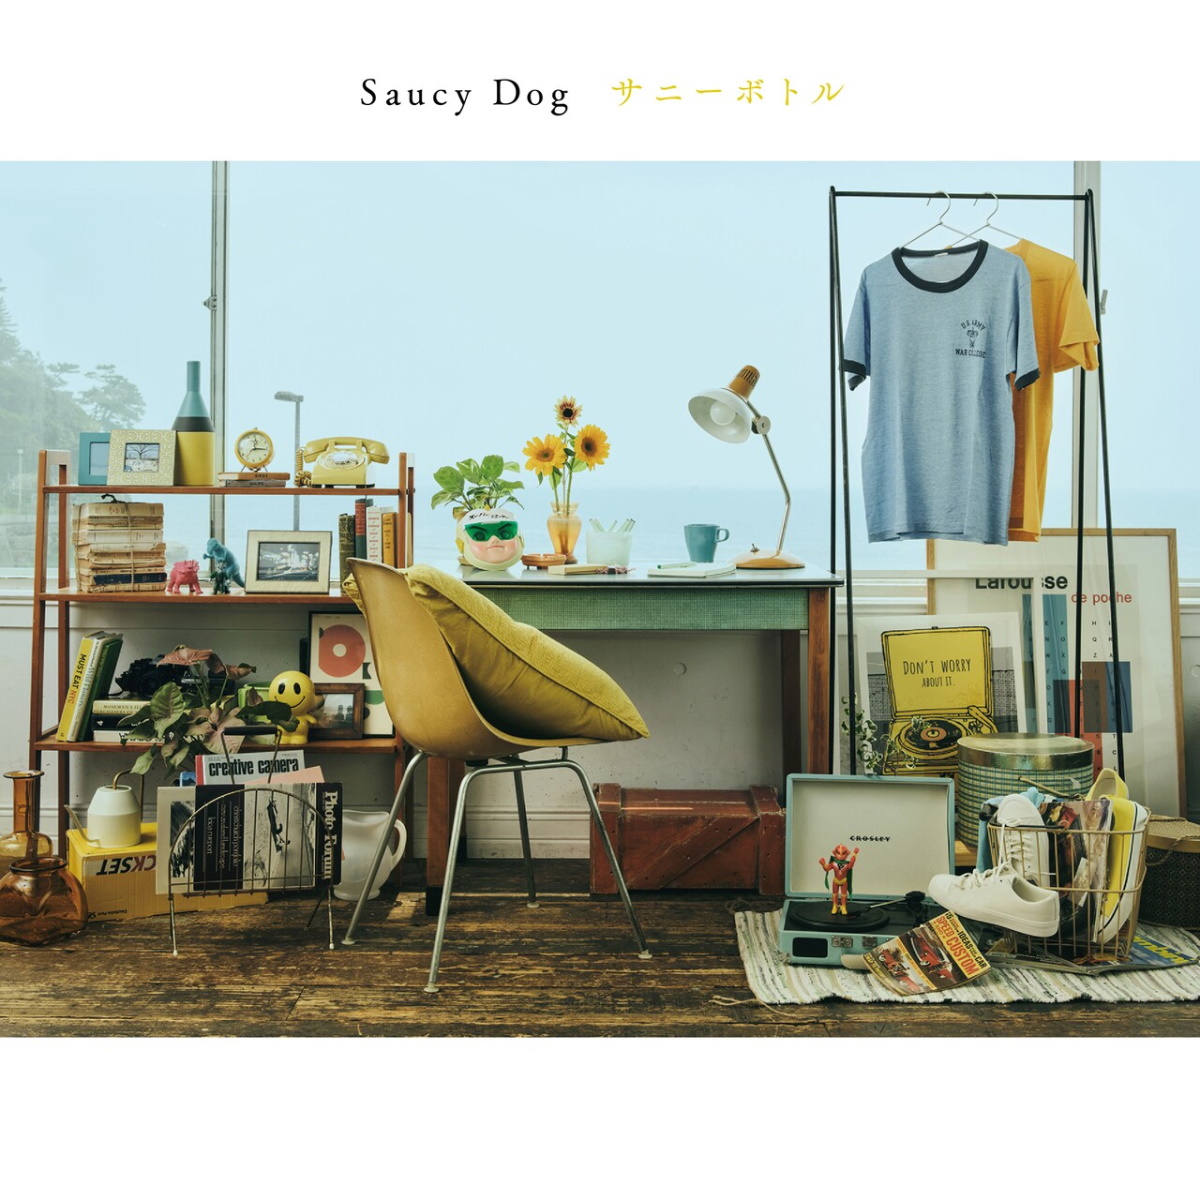 『Saucy Dog - シンデレラボーイ』収録の『レイジーサンデー』ジャケット